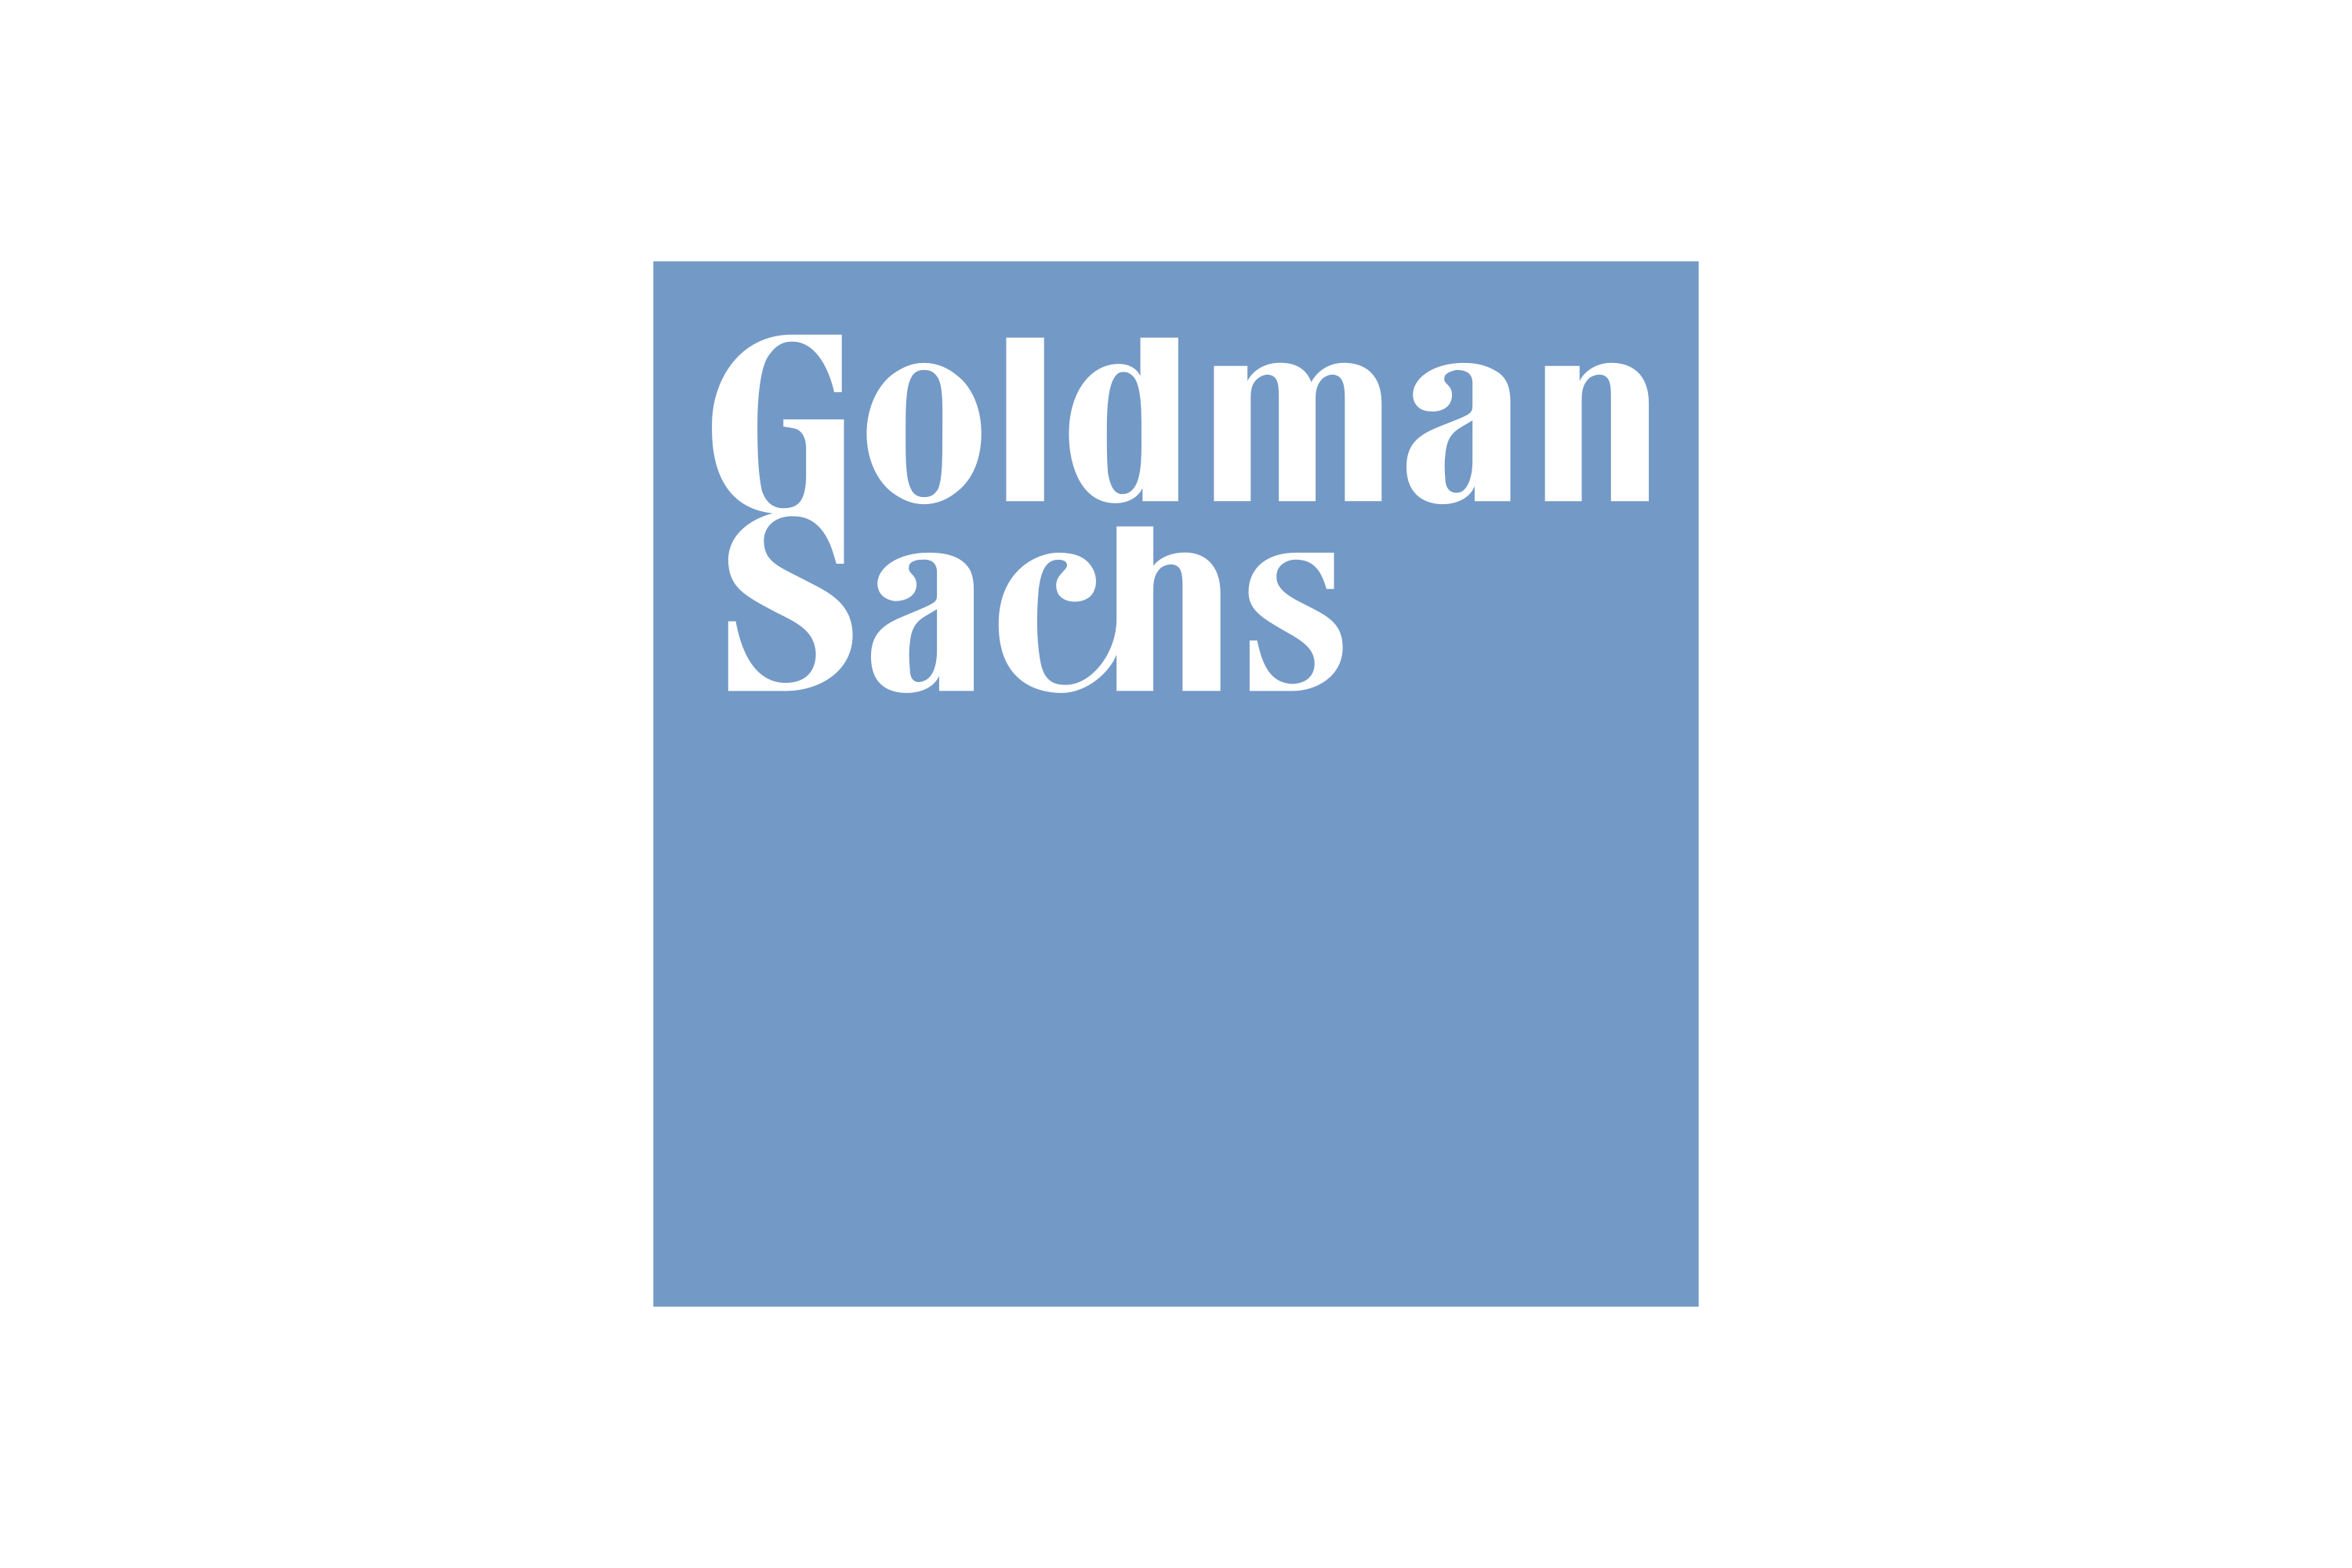 Download Goldman Sachs Logo In Svg Vector Or Png File Format Logo Wine